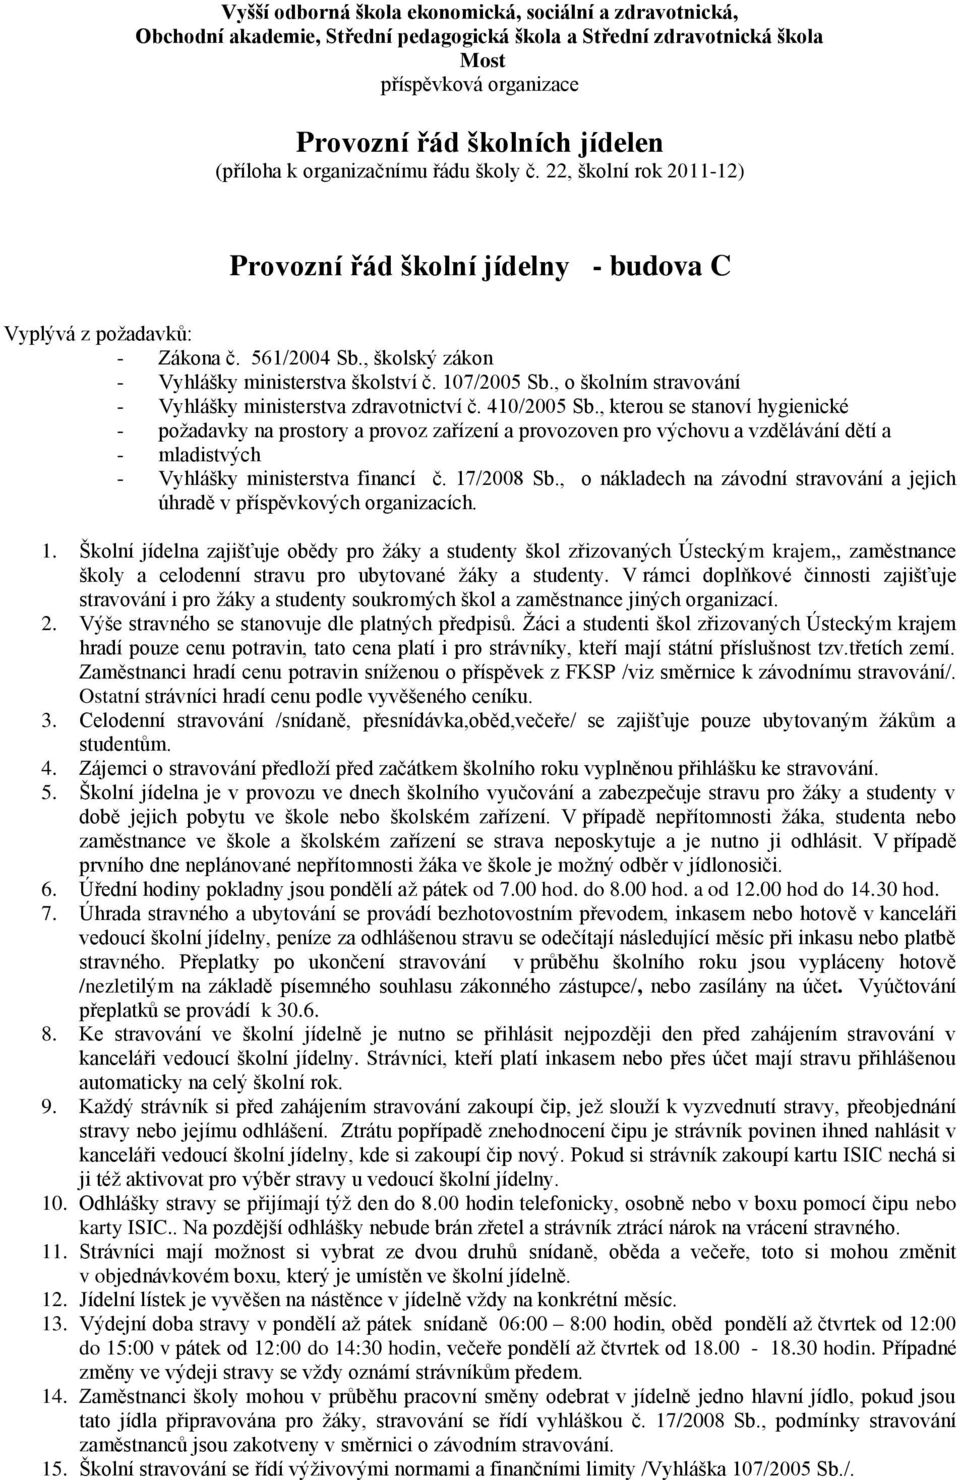 , o školním stravování - Vyhlášky ministerstva zdravotnictví č. 410/2005 Sb.